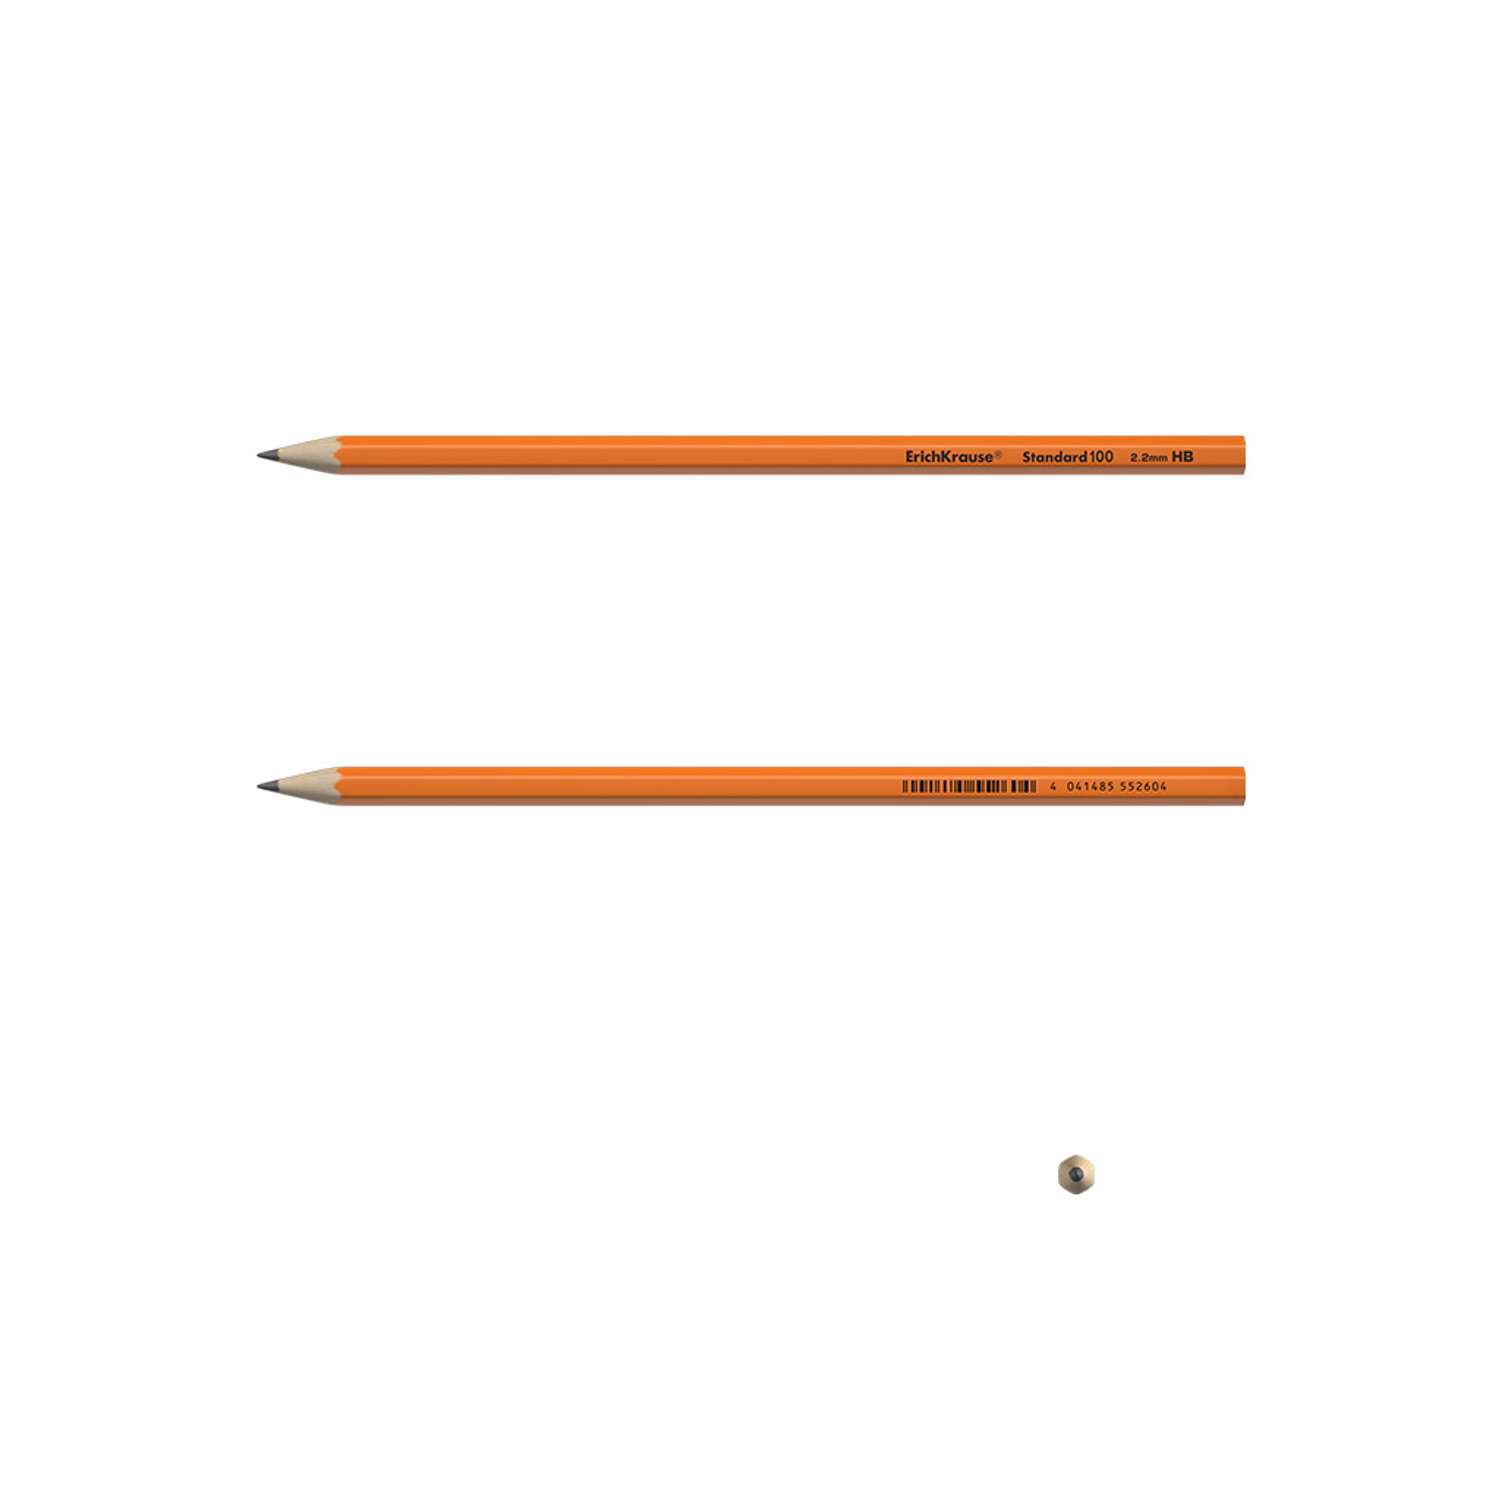 Чернографитный карандаш ErichKrause пластиковый шестигранный Standard 100 Orange HB 12 шт - фото 5